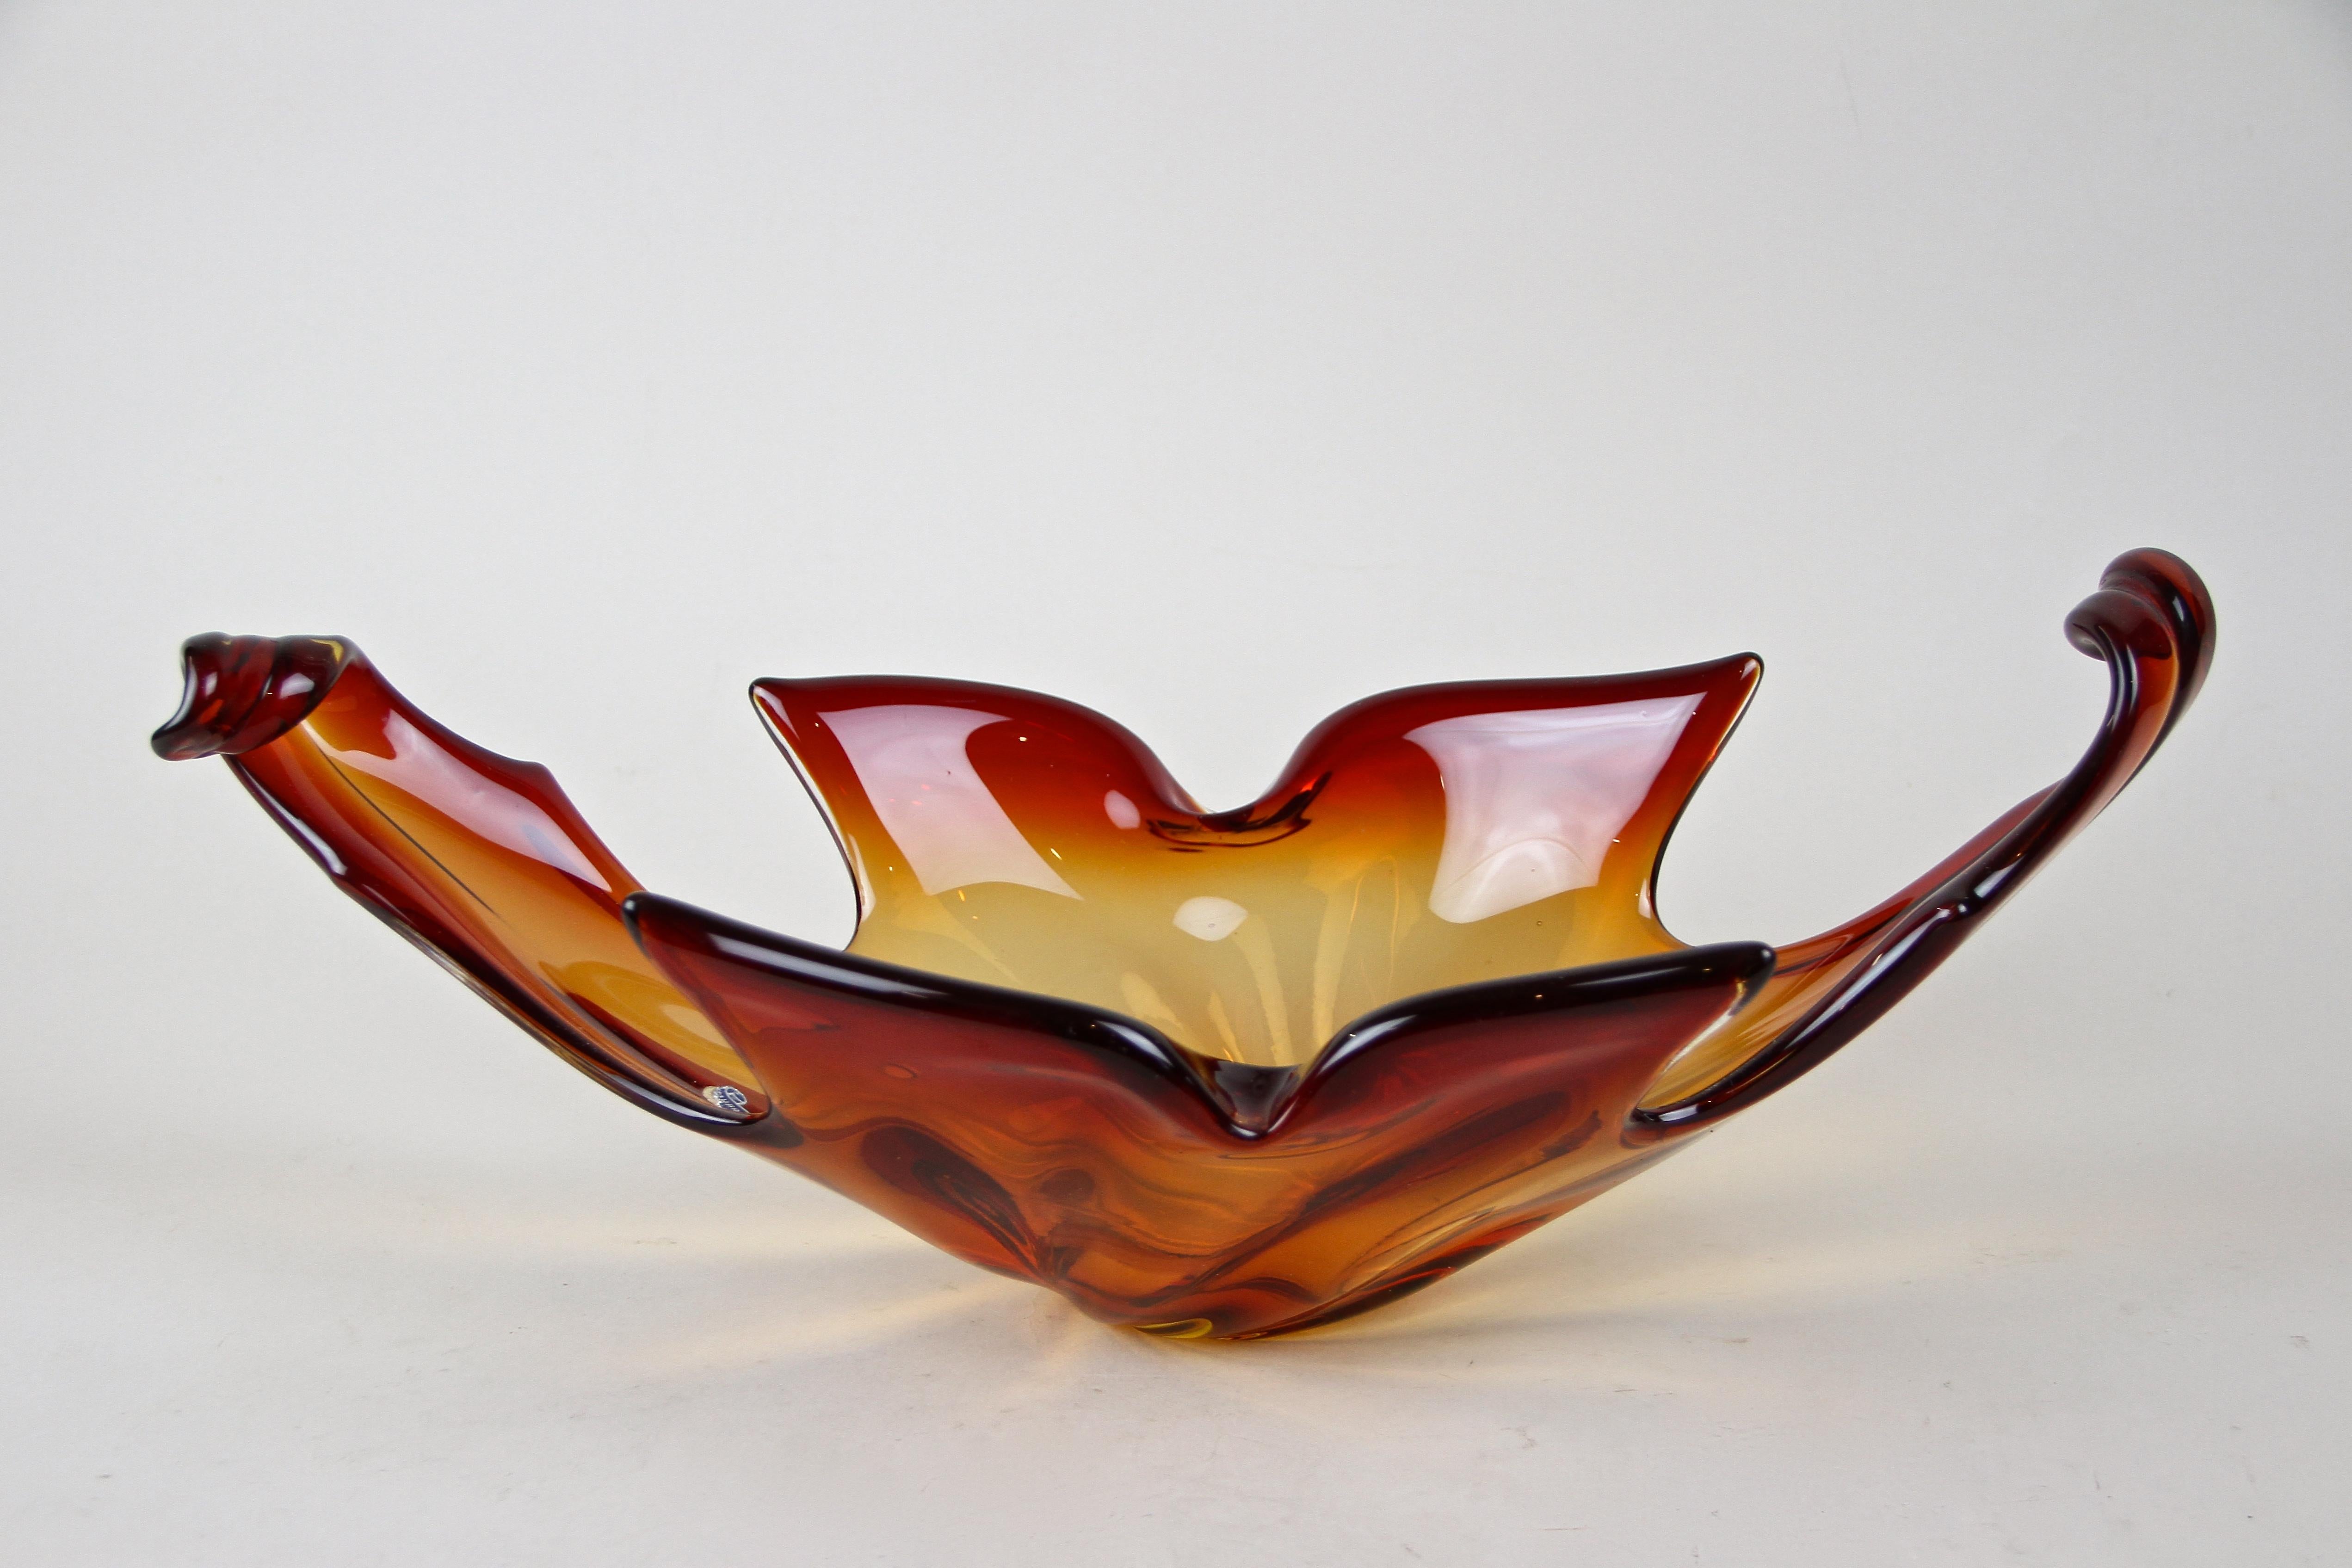 Schöne, hochdekorative Murano-Glasschale aus den renommierten Werkstätten in Italien aus der Zeit um 1960/70. Diese große Glasschale in schönen Rot- und Orangetönen besticht durch ihre ungewöhnliche Form und ihr außergewöhnliches Design. Sie kann z.